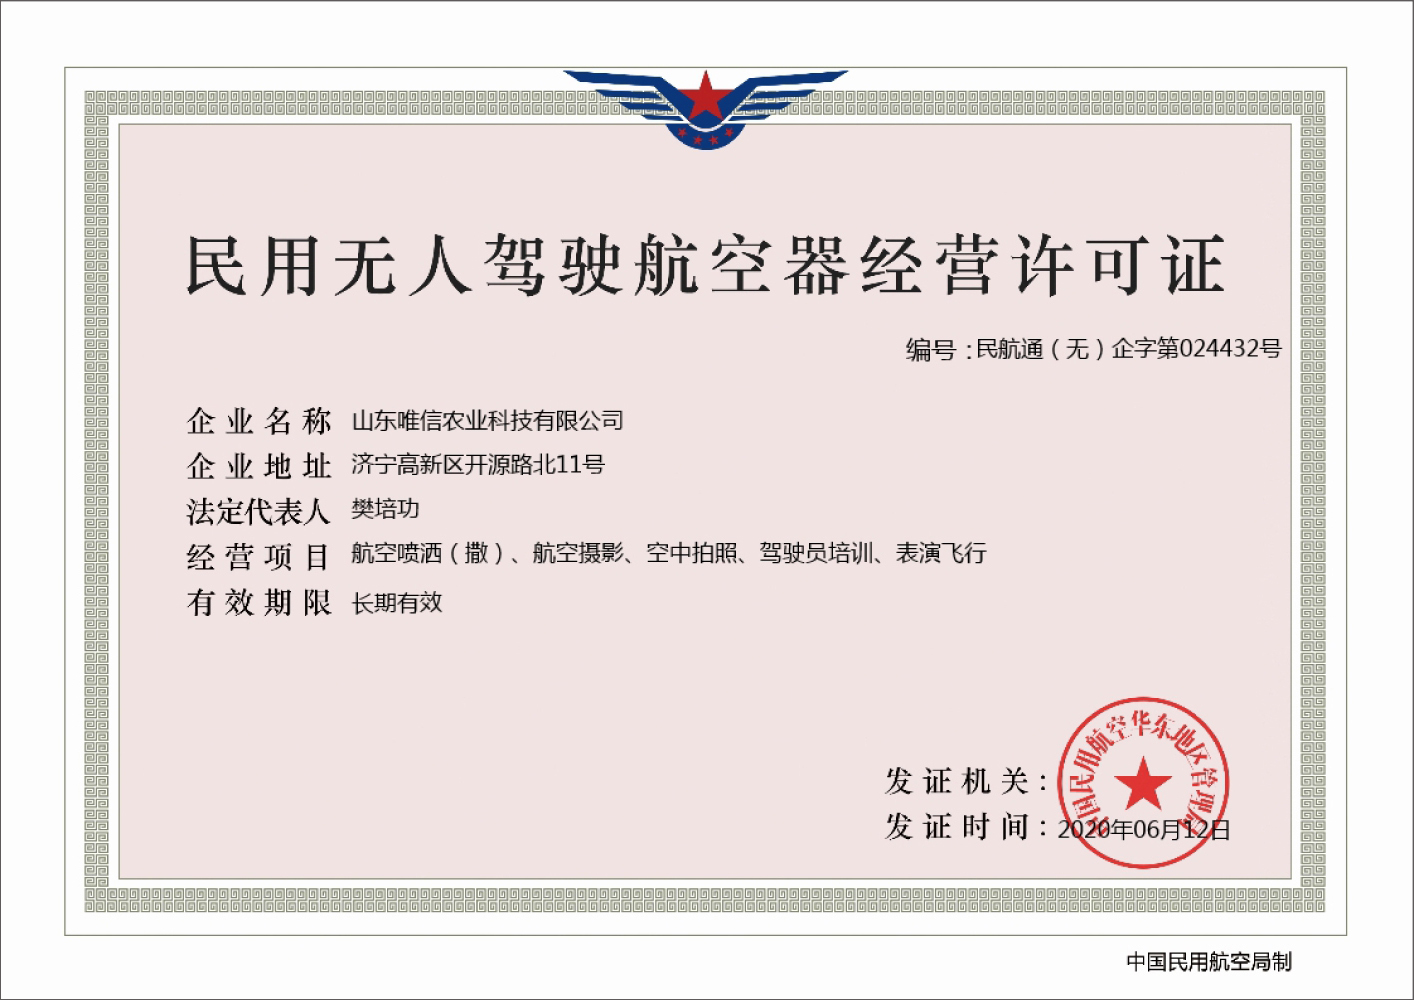 Поздравляем Weixin Аграрно-технологическую компанию за получение лицензии на эксплуатацию гражданских беспилотных летательных аппаратов